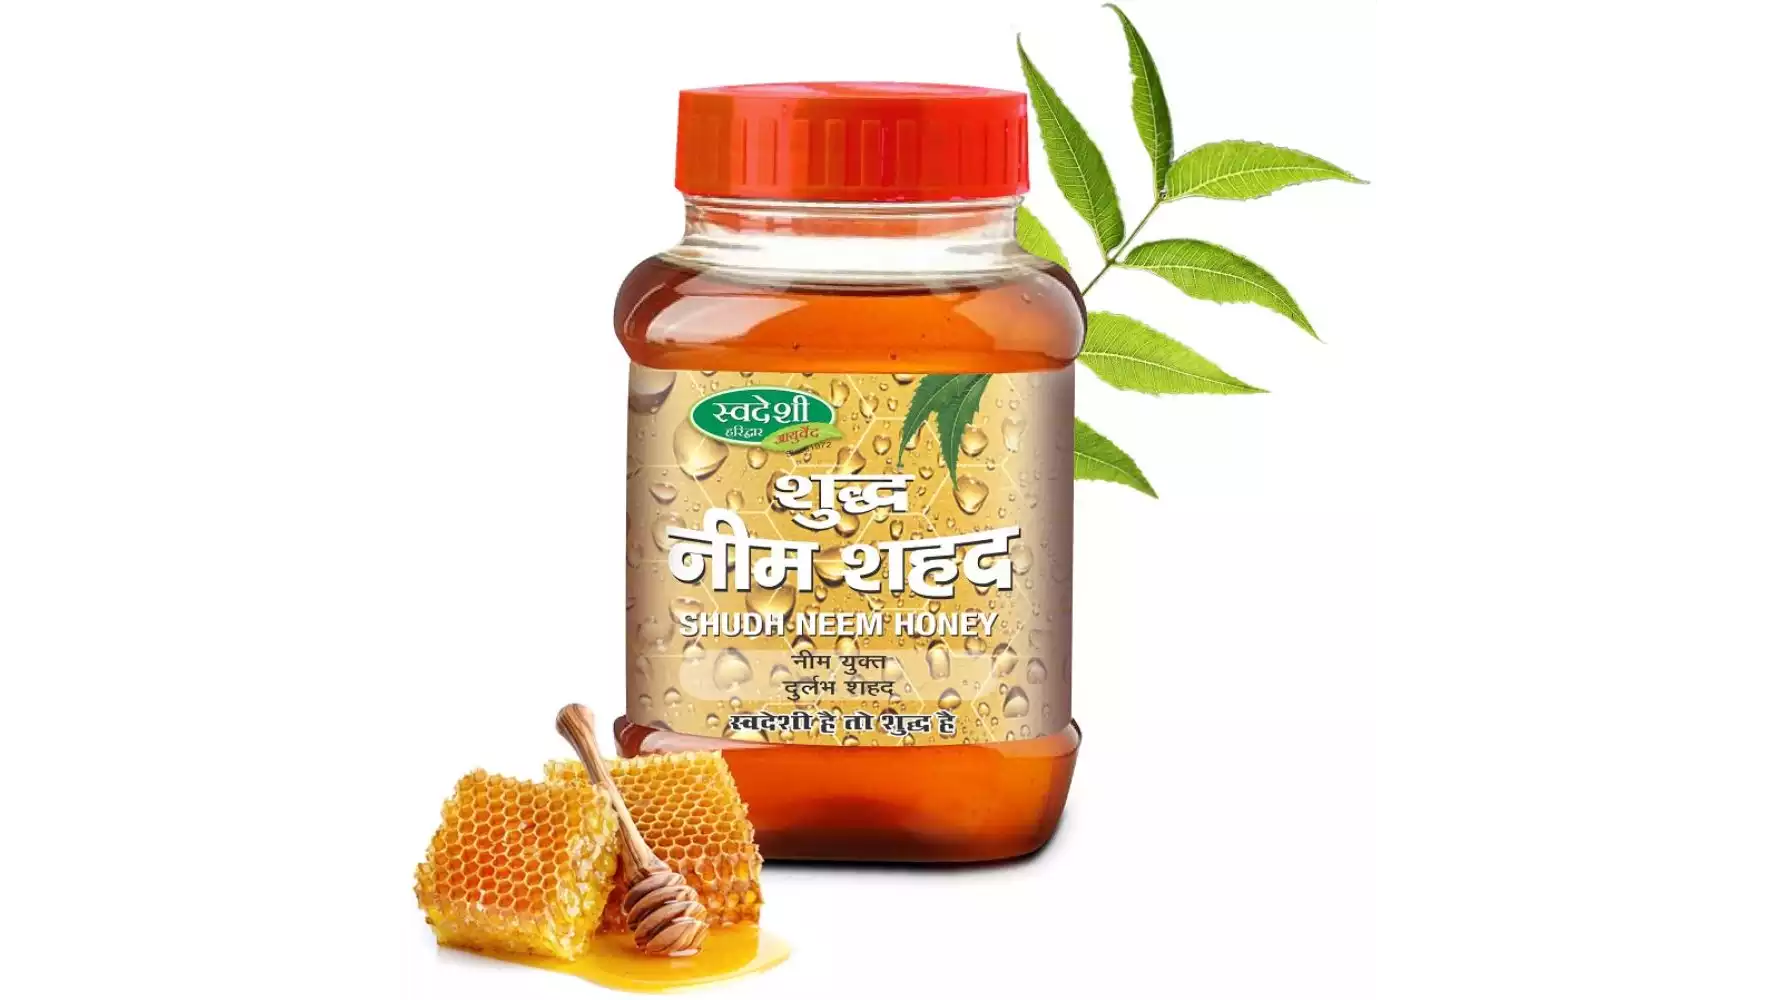 Swadeshi Ayurved Shudh Neem Honey (500g)